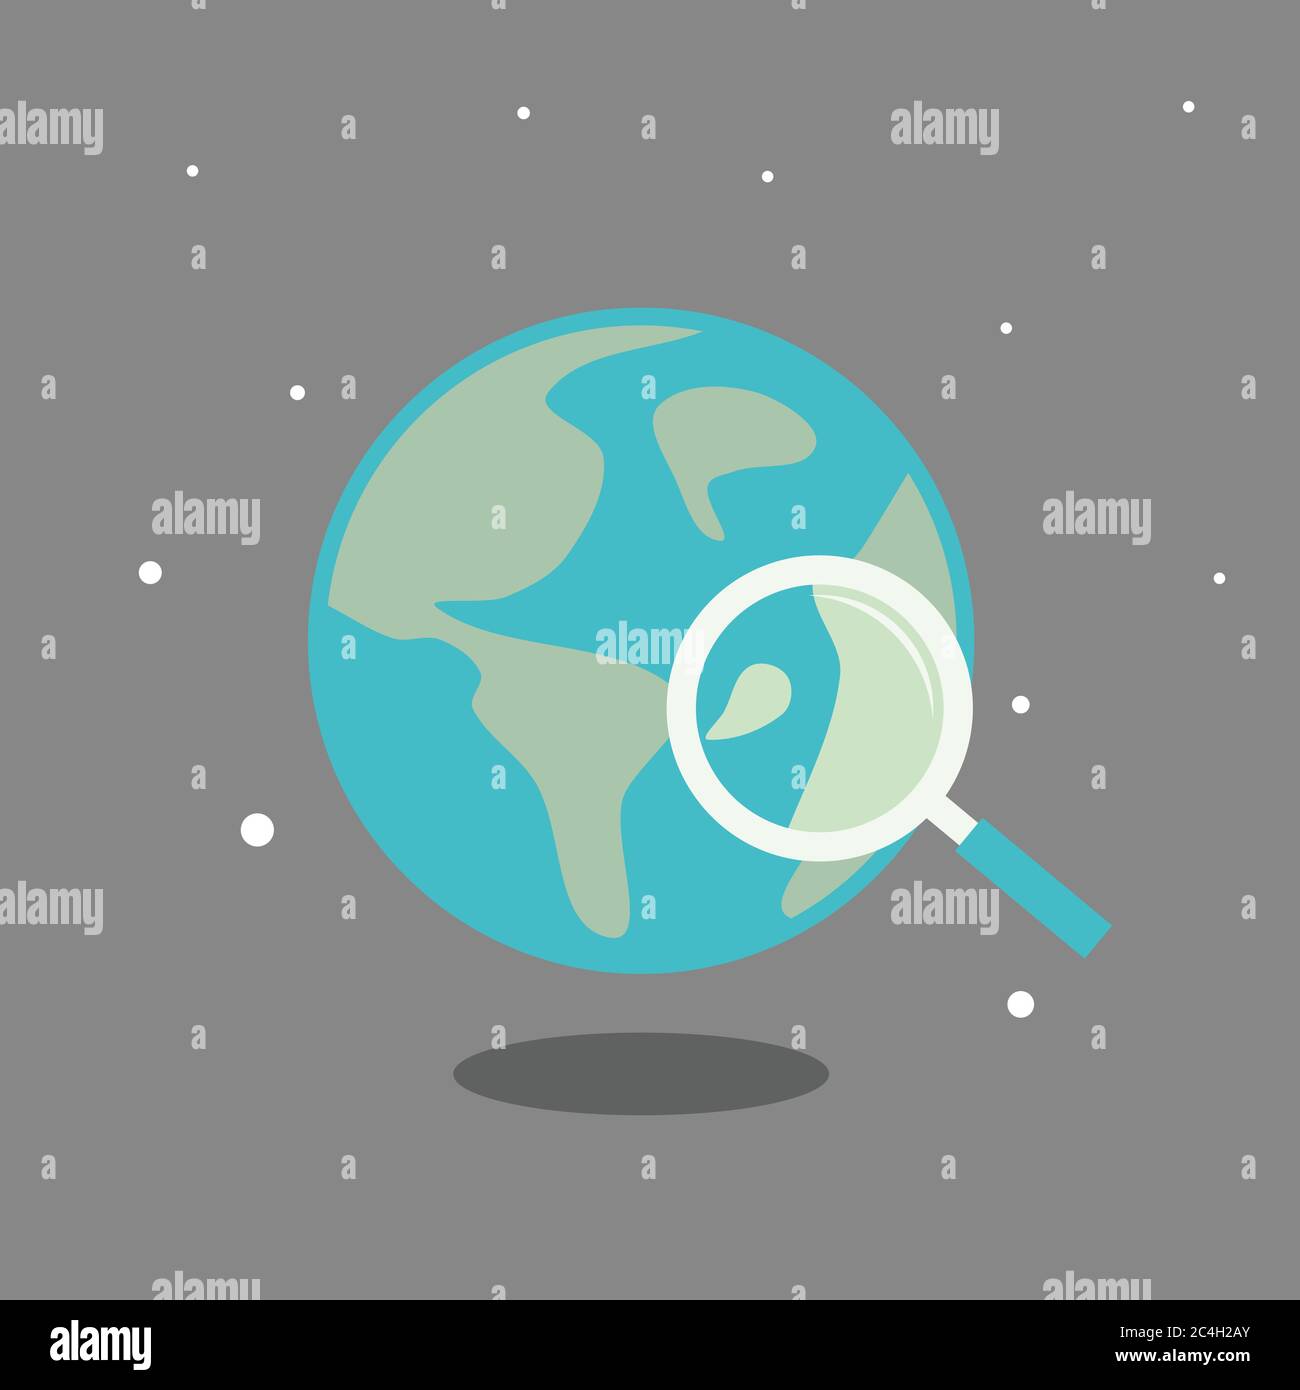 Planet Erde mit Suchsymbol aus der Astronomie. Flaches Design Planet Erde für Element Design oder Hintergrund. Vektorgrafik EPS.8 EPS.10 Stock Vektor